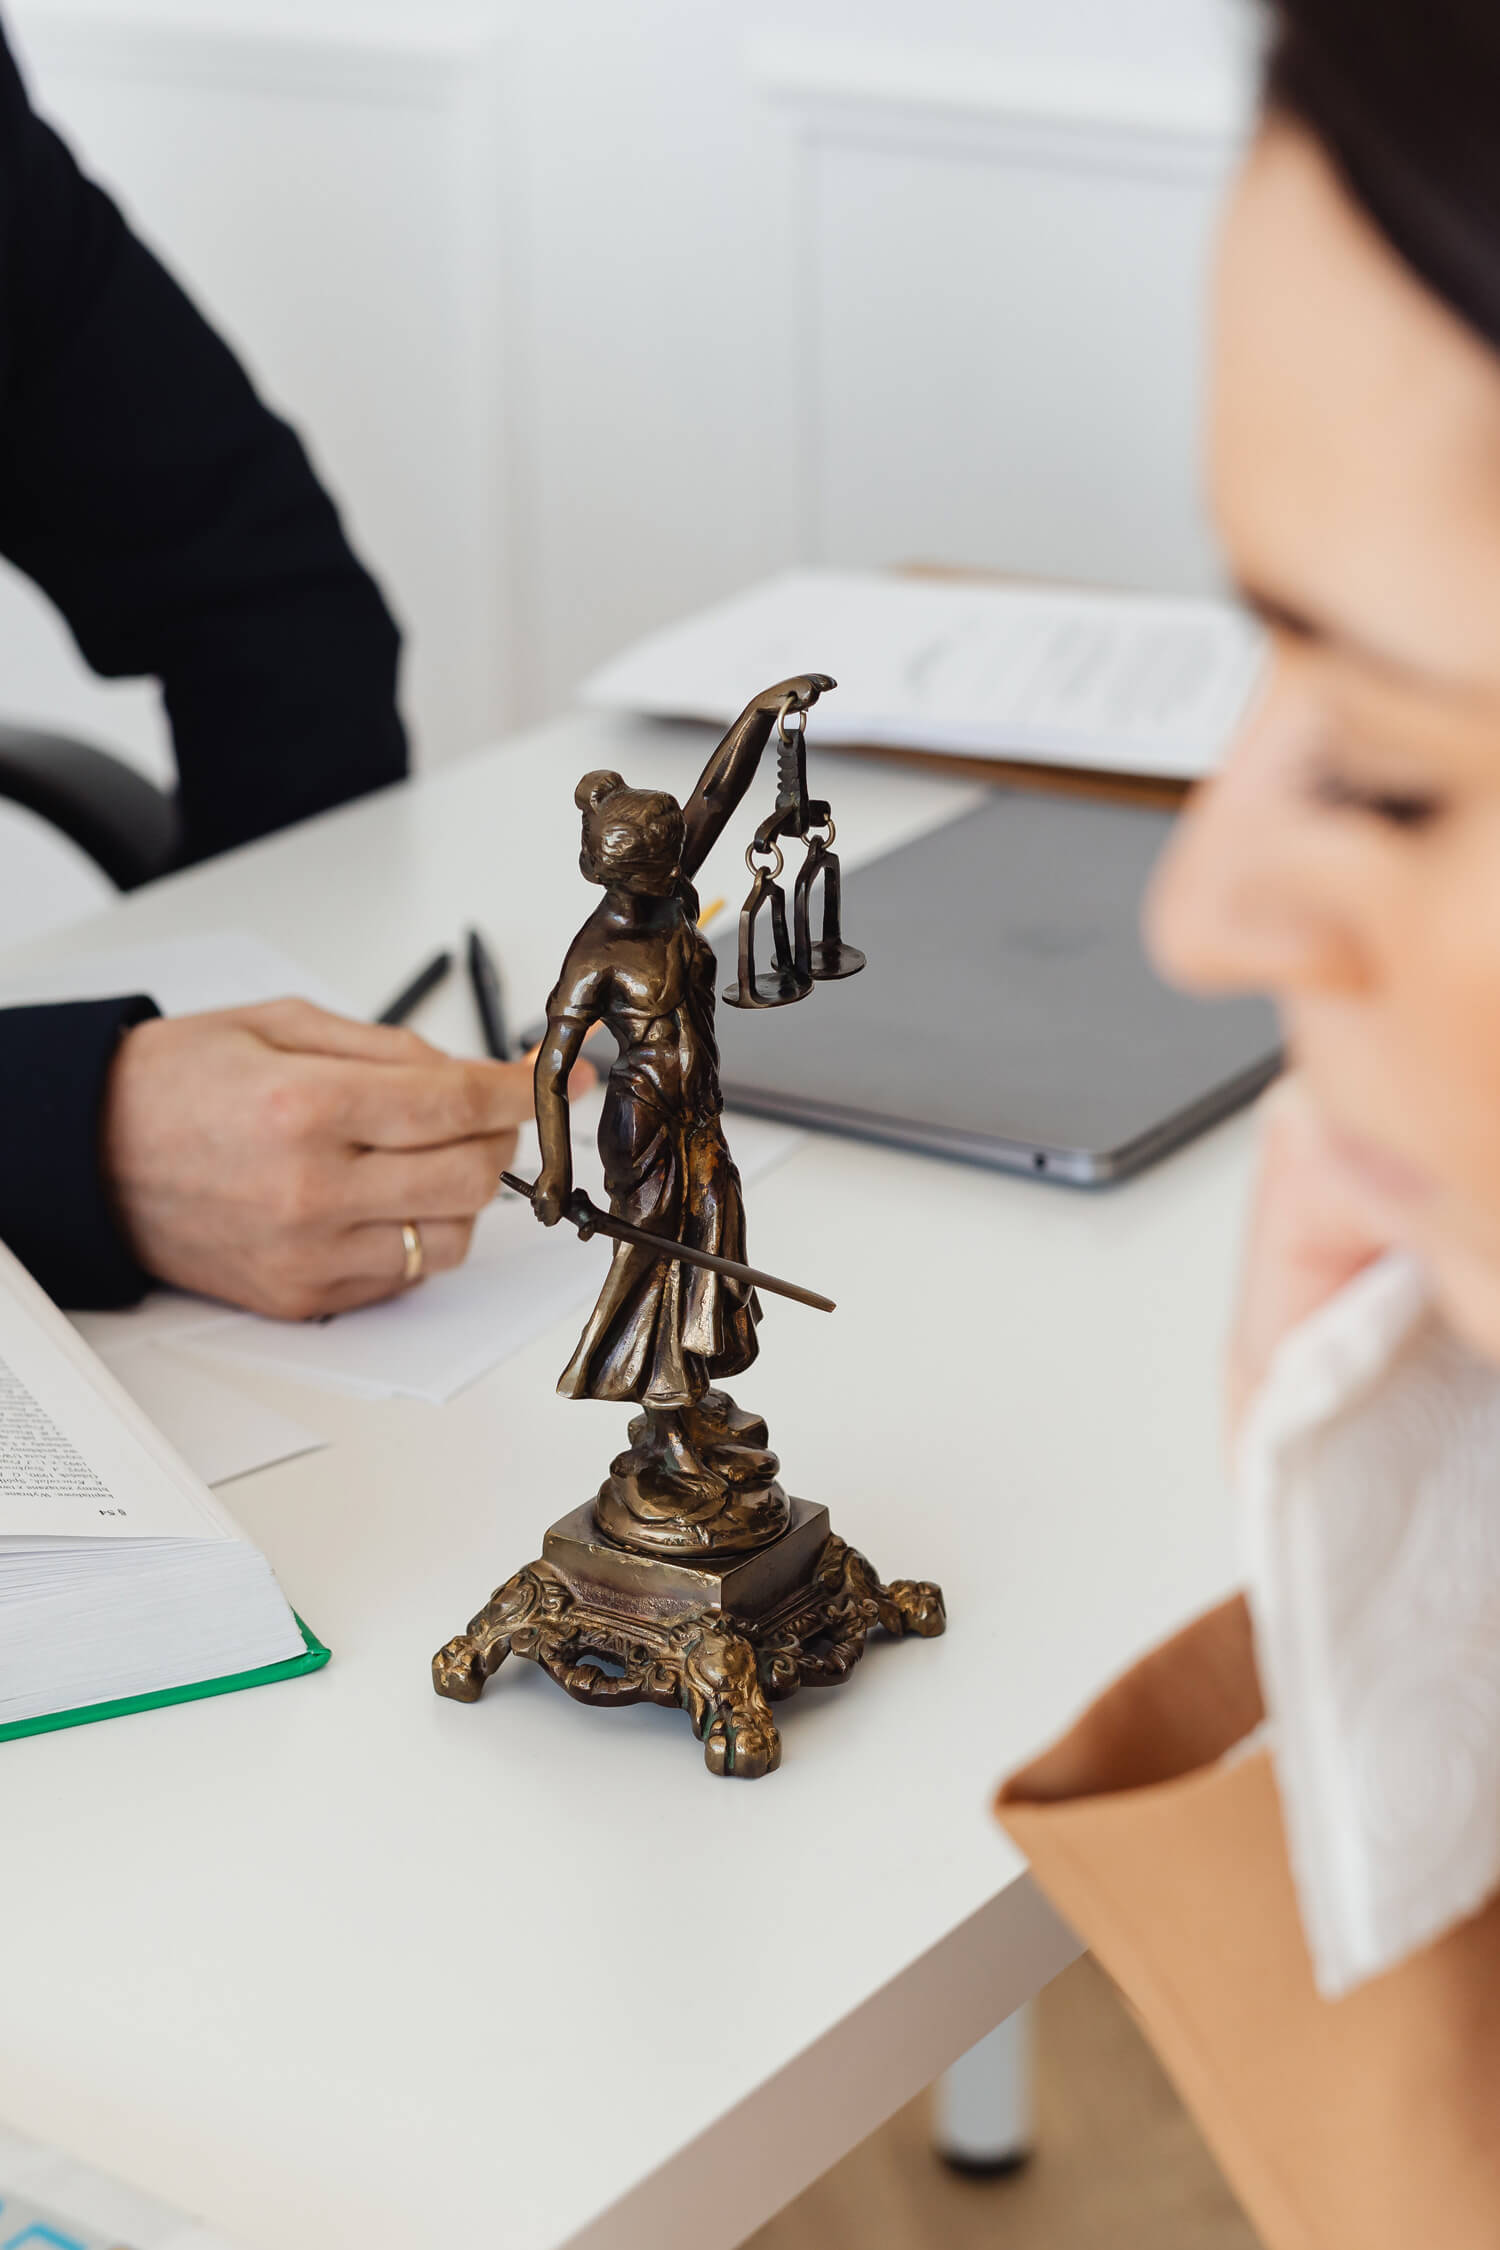 Justizia als Bronzefigur auf einem Schreibtisch